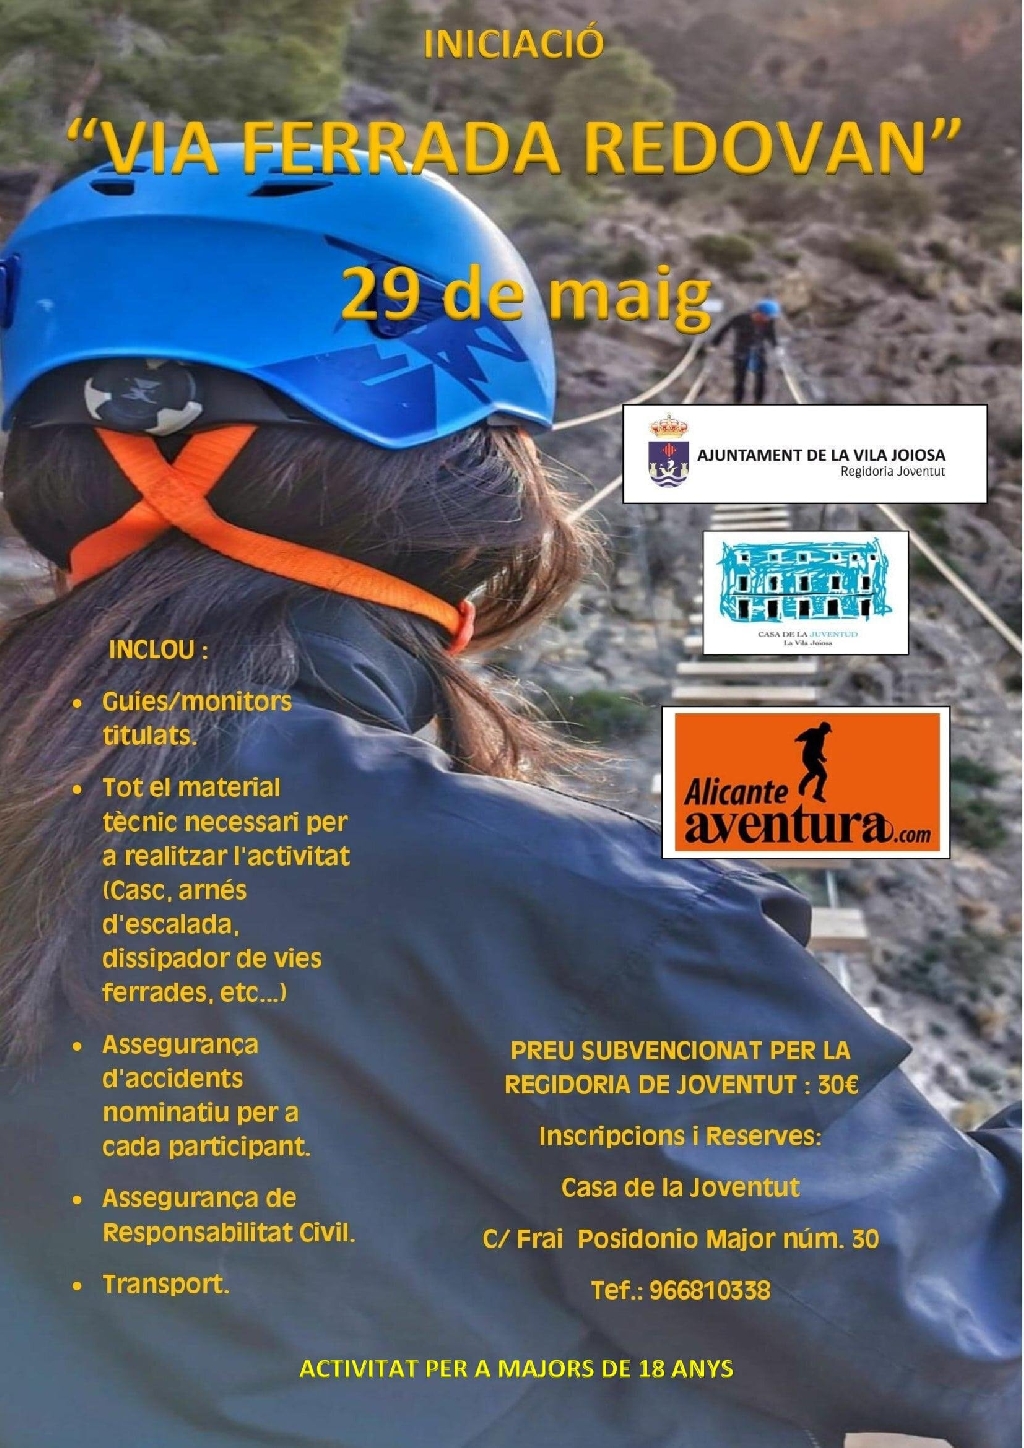 Joventut de la Vila Joiosa organitza una jornada d'aventura i esport en la via ferrada de Redovan